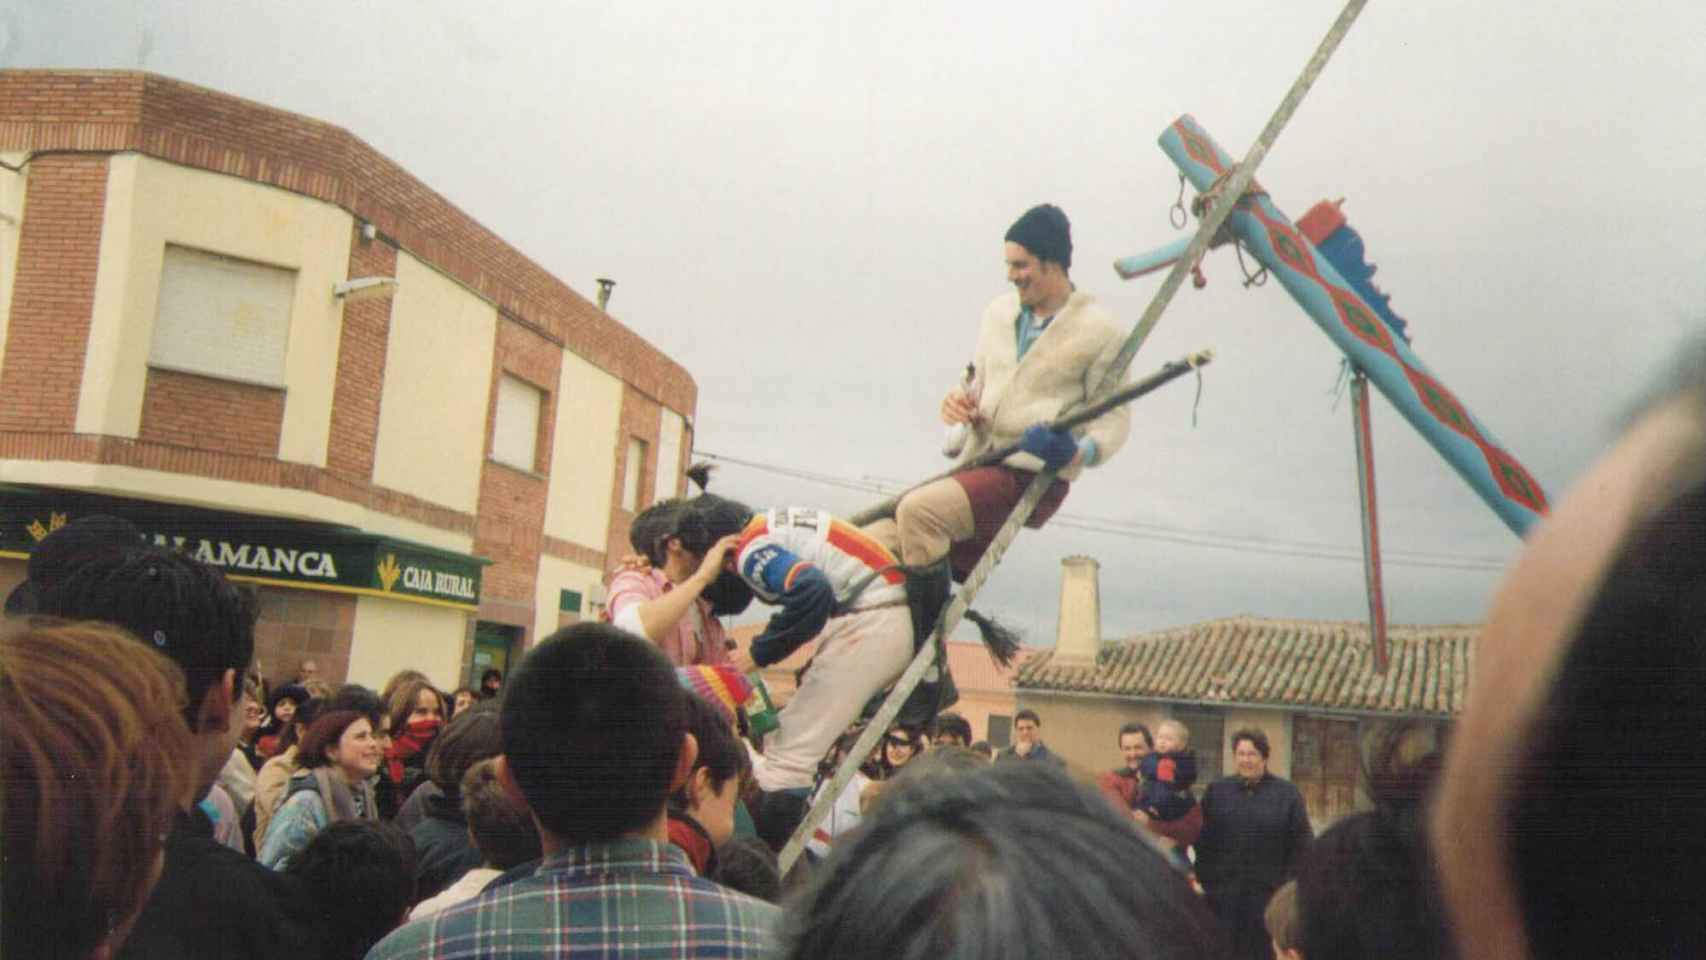 Imágenes de La Hora, fiesta bufa de quintos en Valdecarros